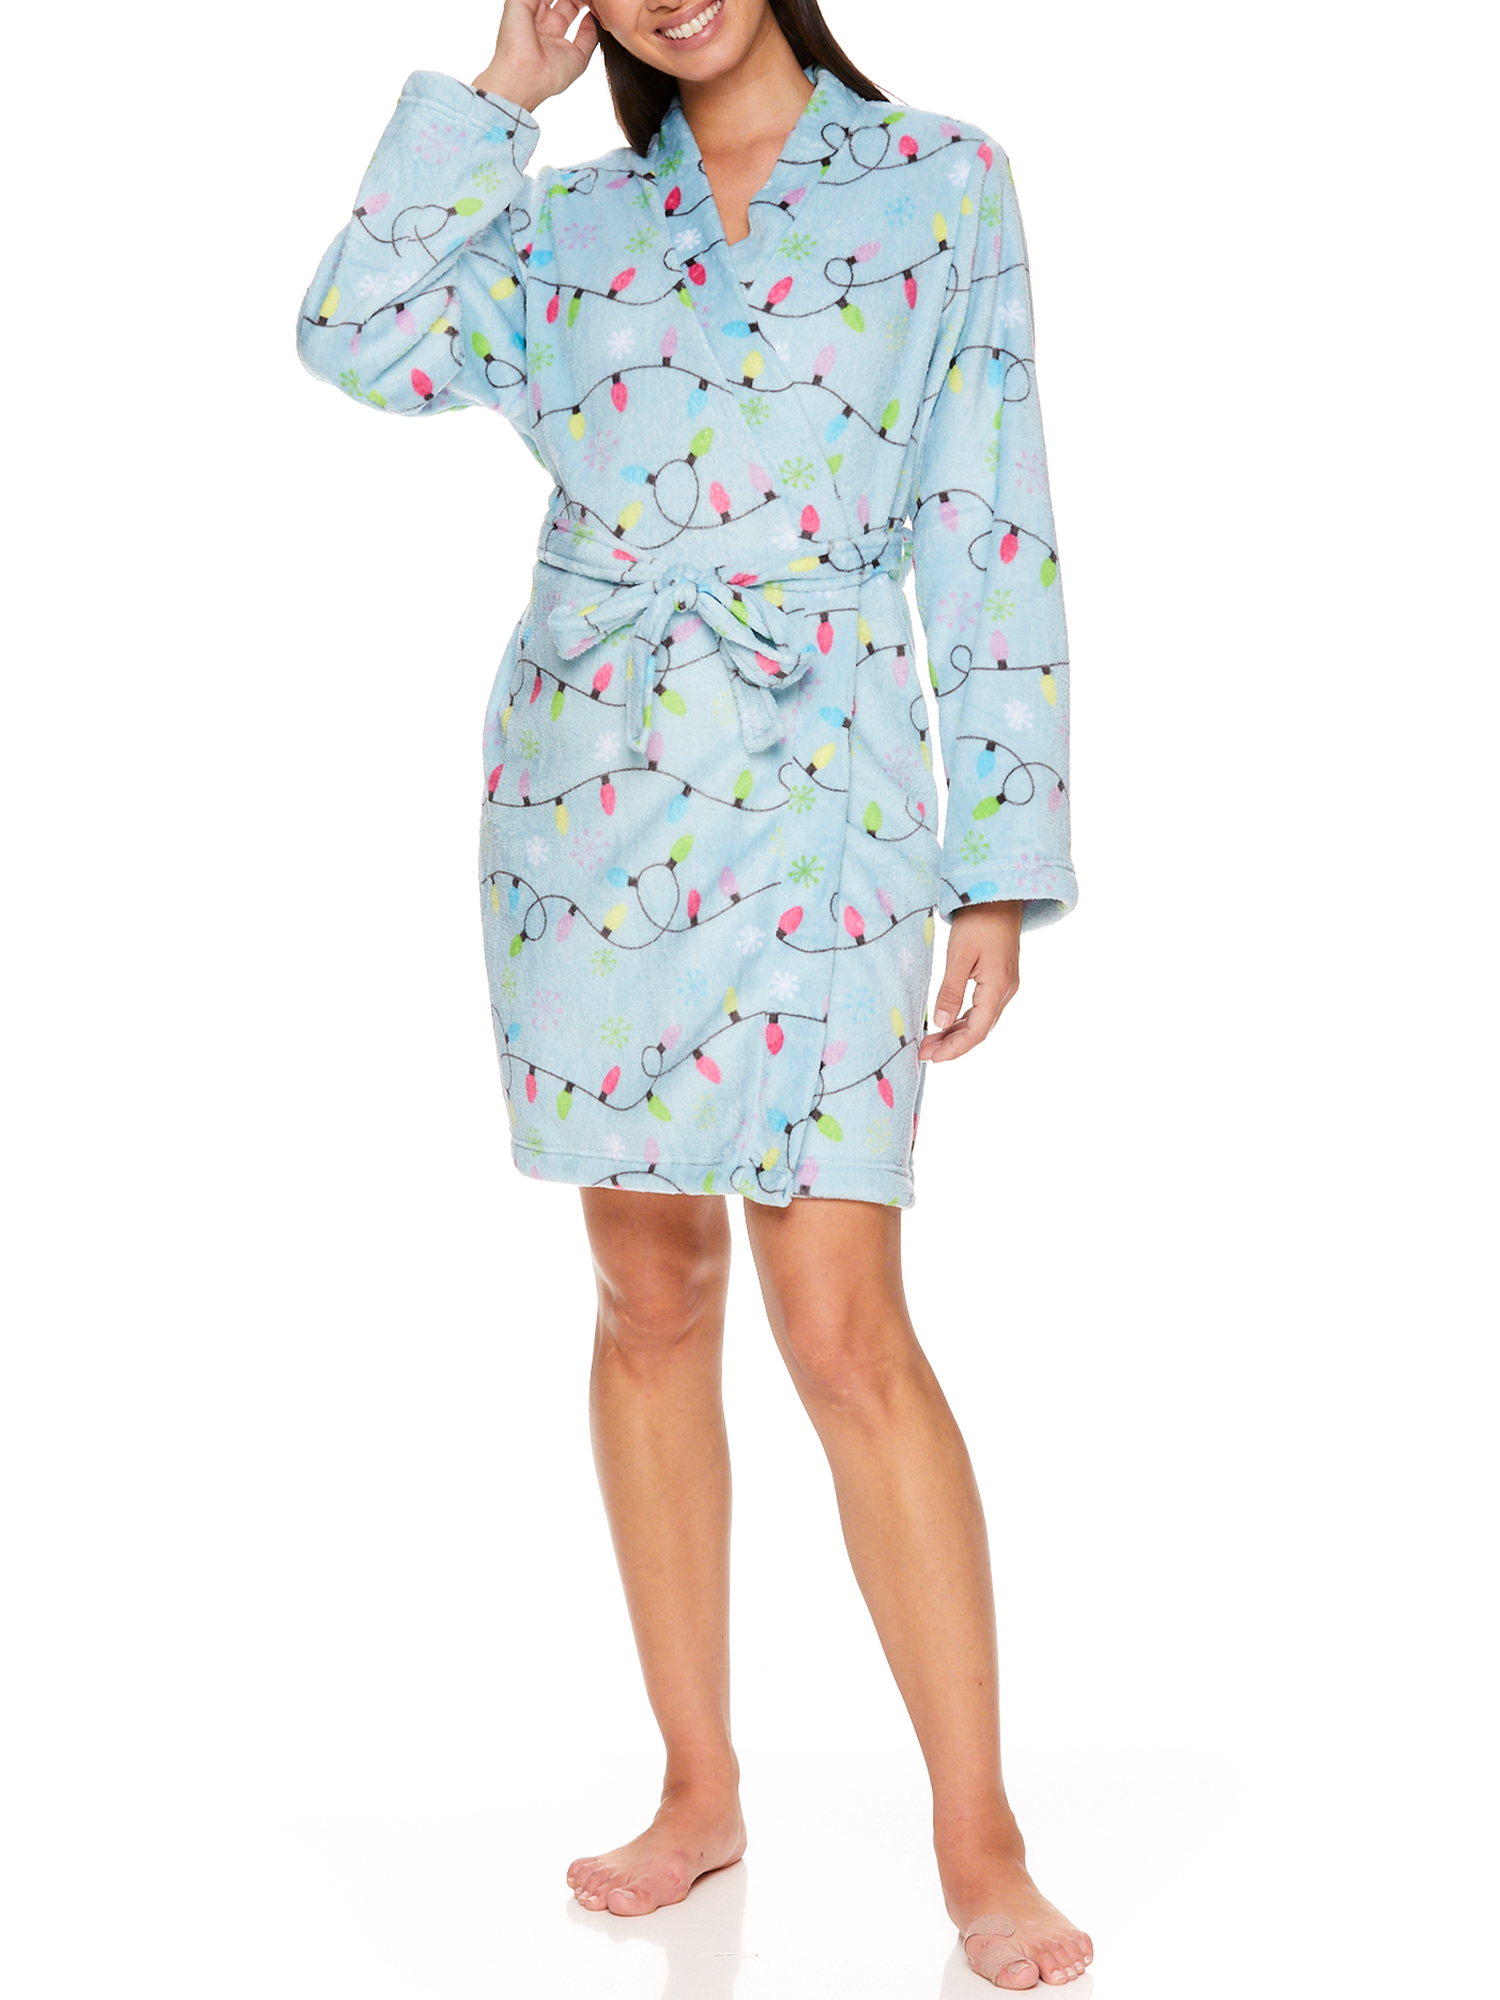 VIP Women's & Women's Plus Plush Pajama Sleep Robe - image 2 of 3